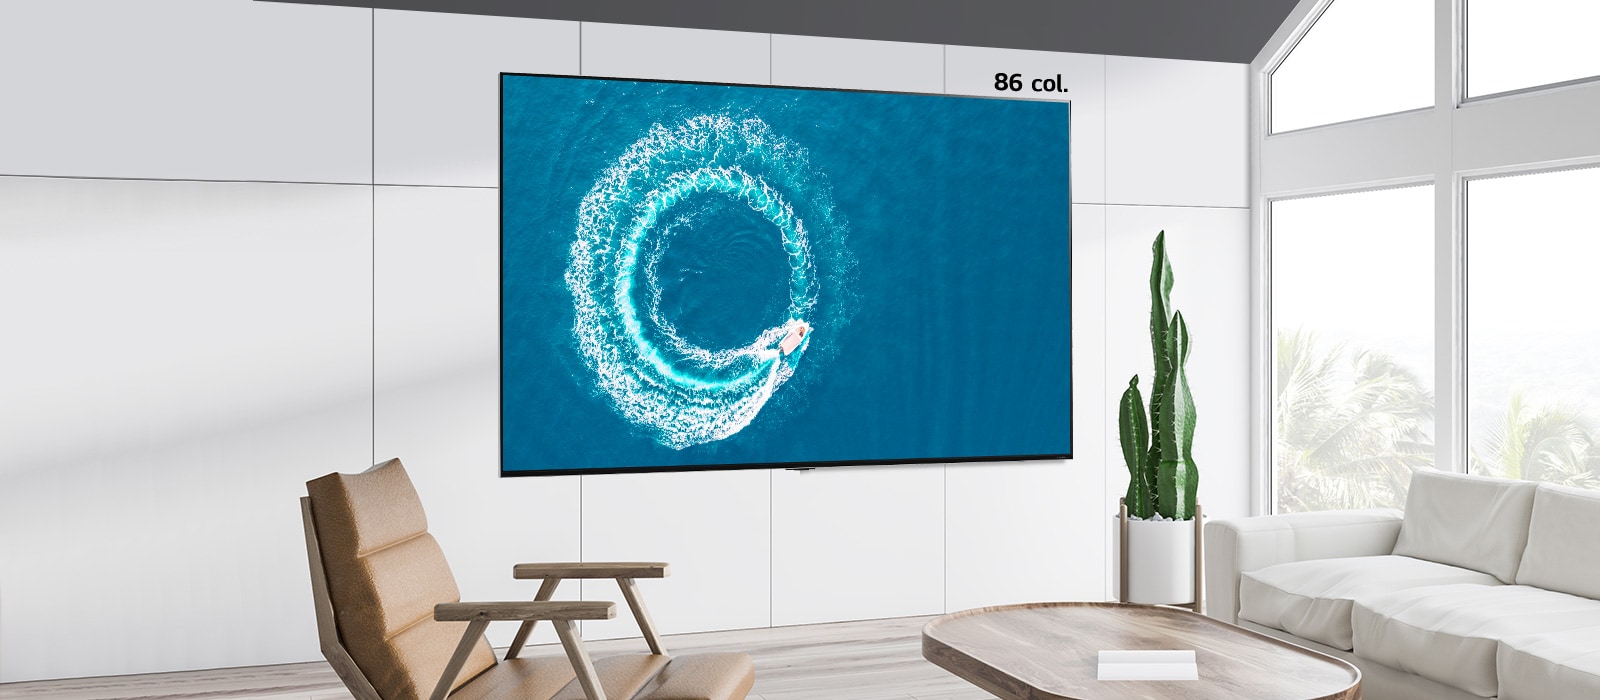 Palyginimas tarp 55 colių ir 86 colių ant sienos pakabintų ekranų, kuriuose vaizduojama plaukianti jachta jūros viduryje.